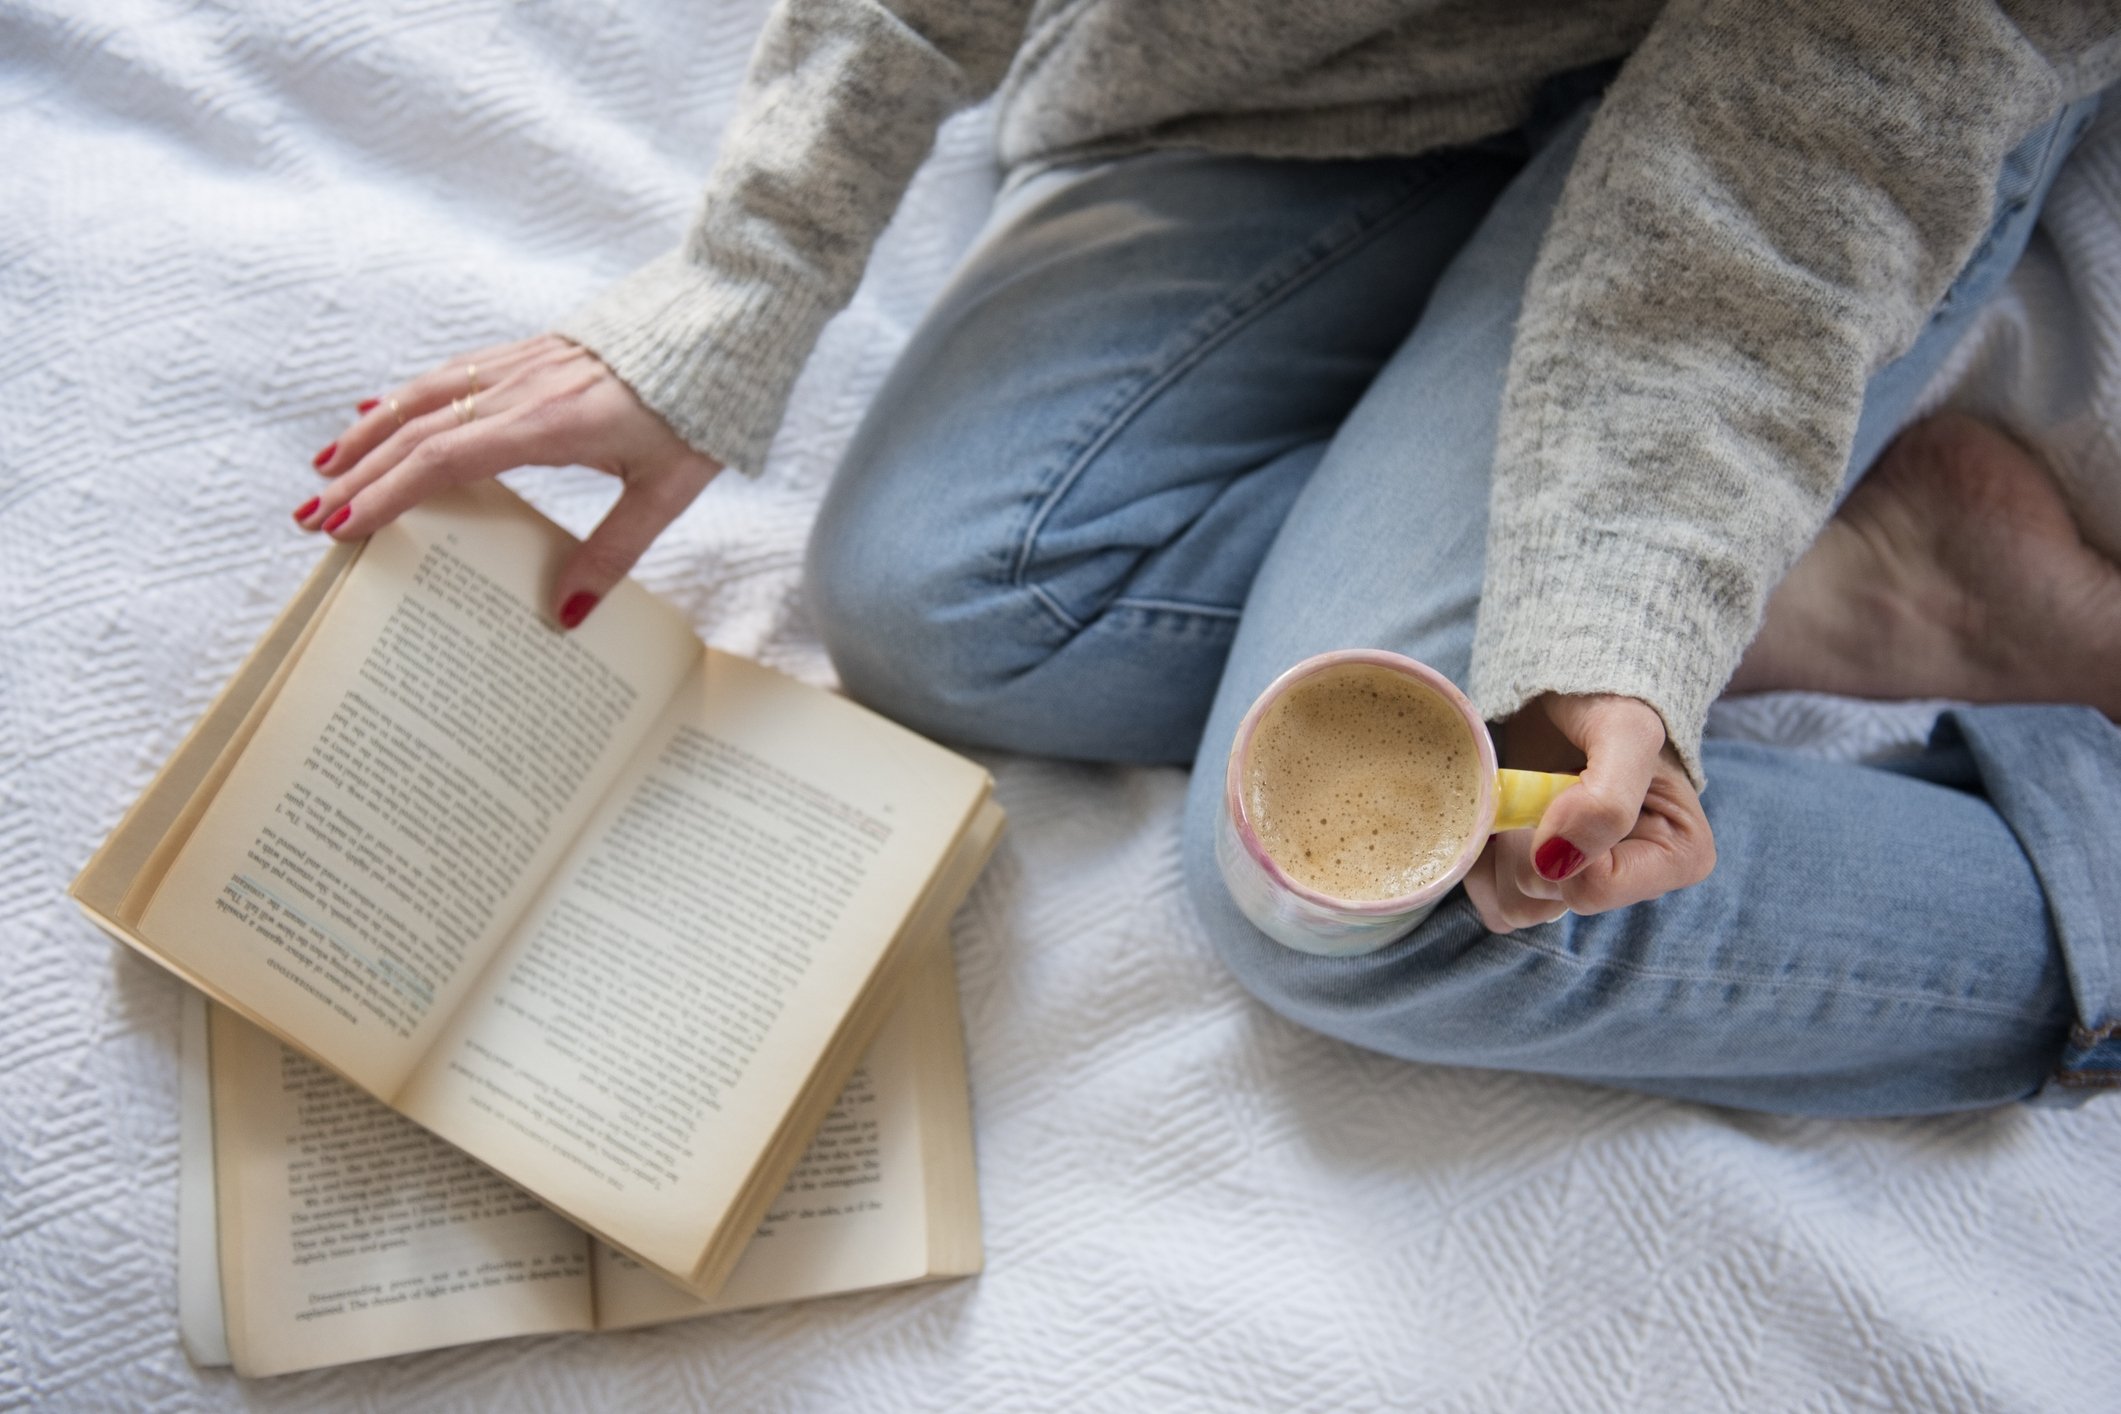 Frau im Bett mit Kaffee und Buch | Quelle: Getty Images